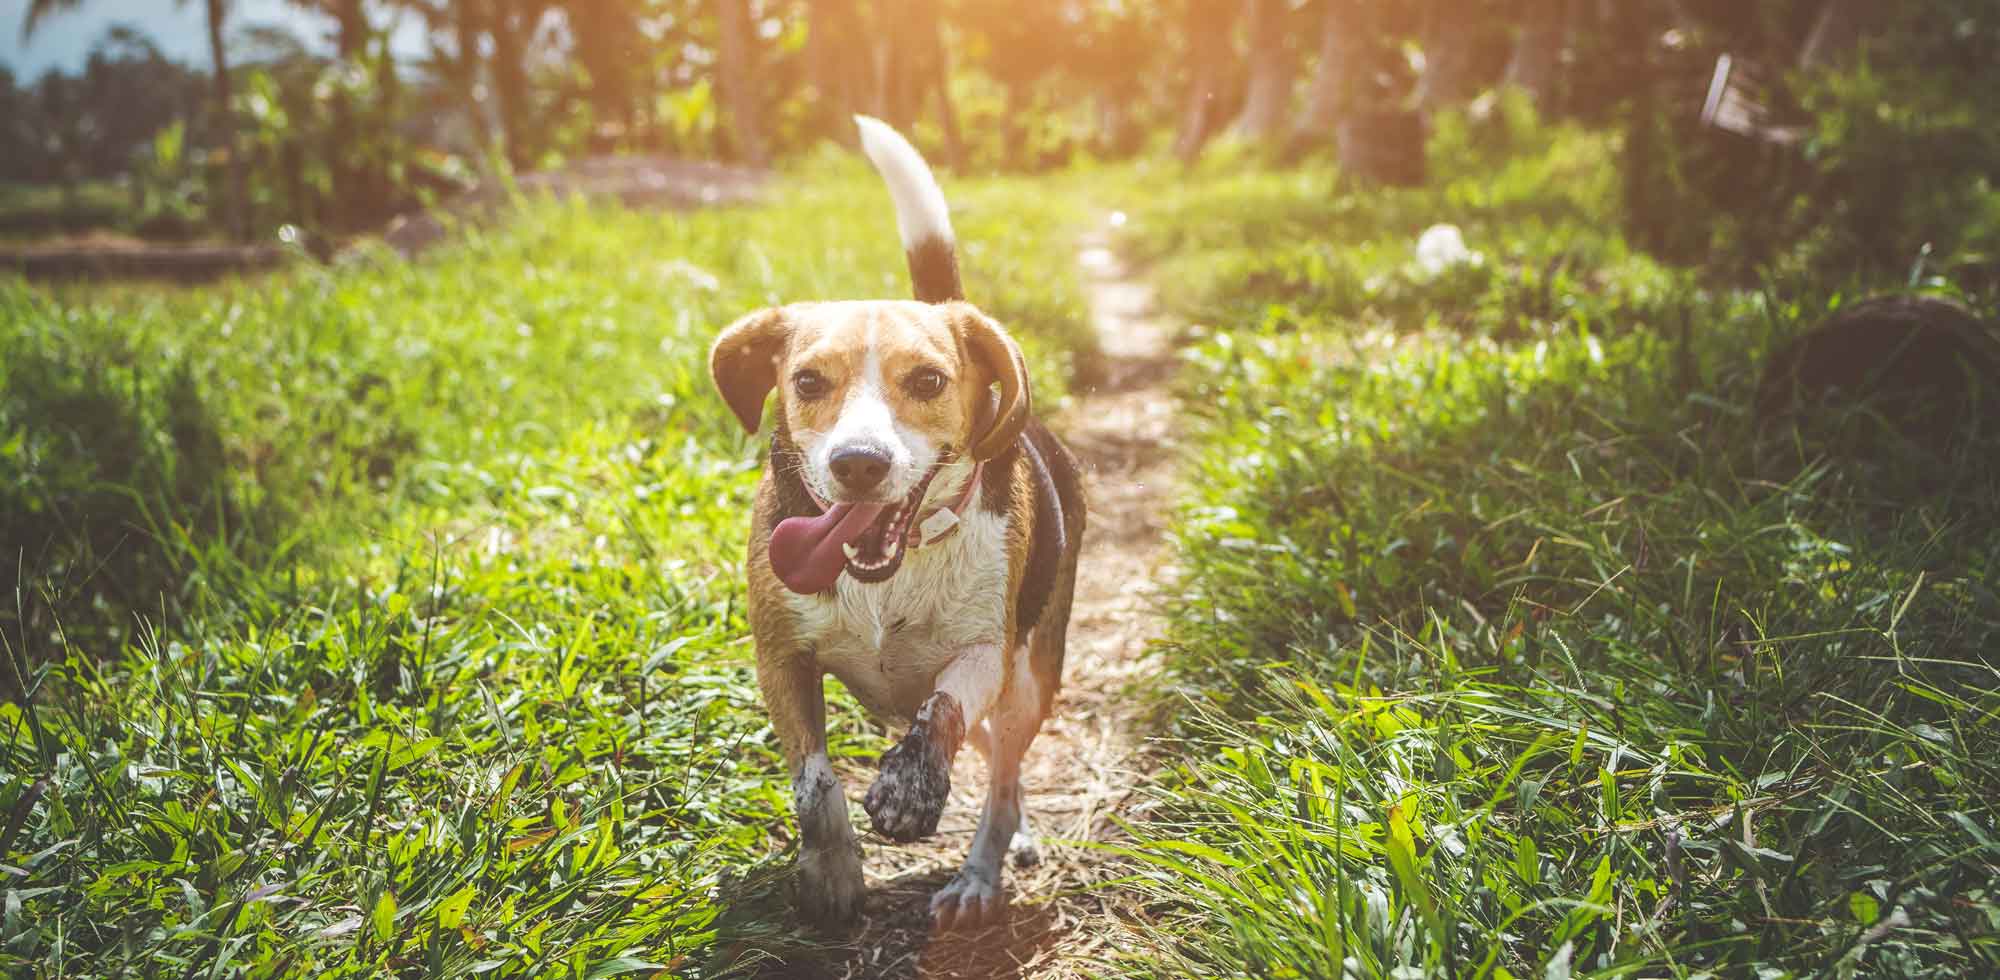 Beagle dog running in grass